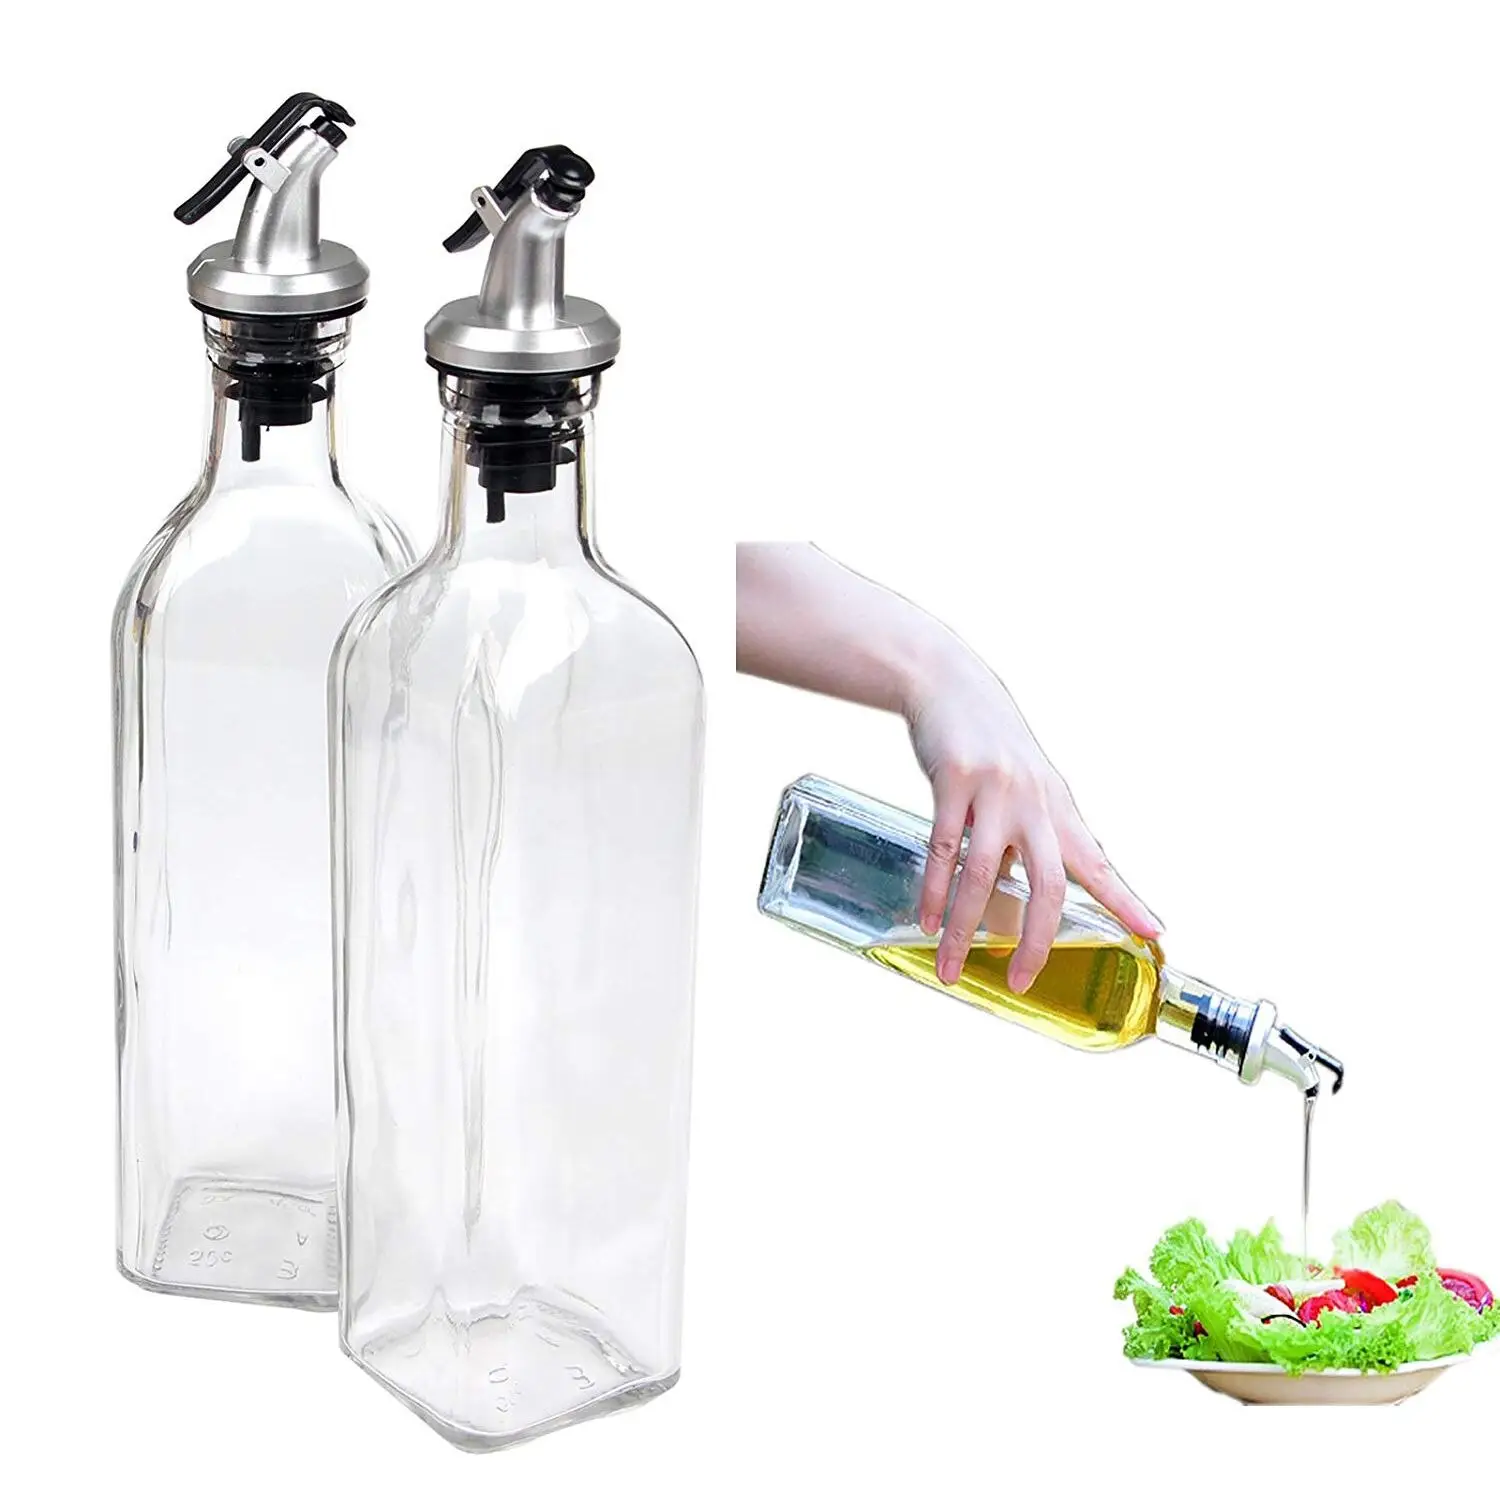 Temizle kare zeytinyağı cam şişe mutfak soya sosu sirke dağıtıcı zeytin kabuğu için kapaklı cam sirke şişesi